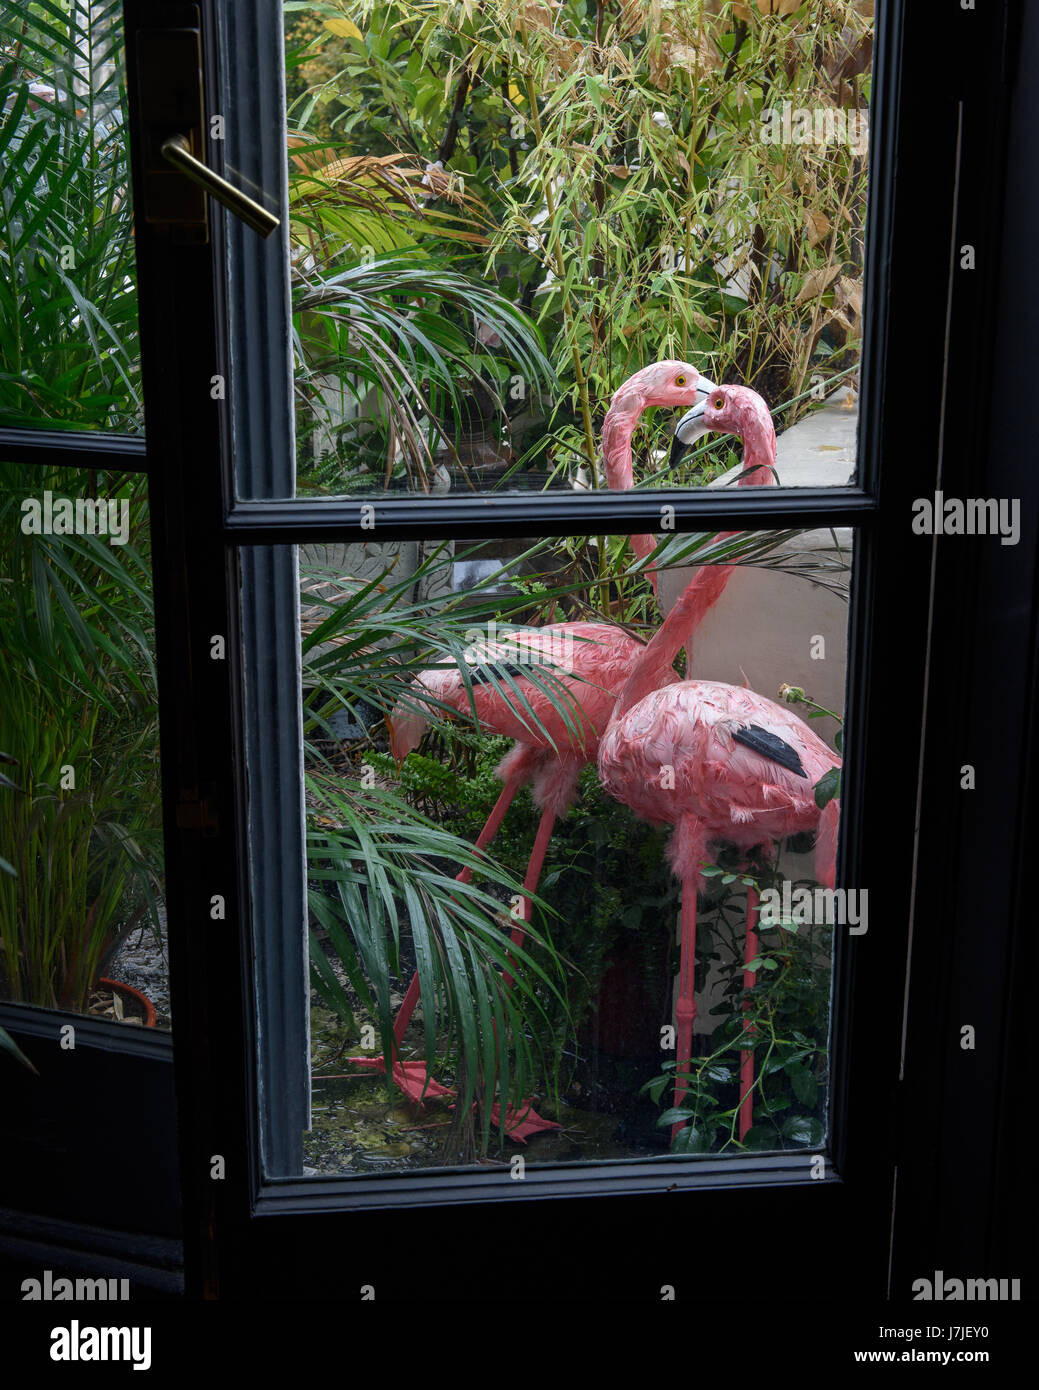 Flamigoes rose et d'un écrin de verdure sur le balcon par des portes fenêtres du salon Banque D'Images